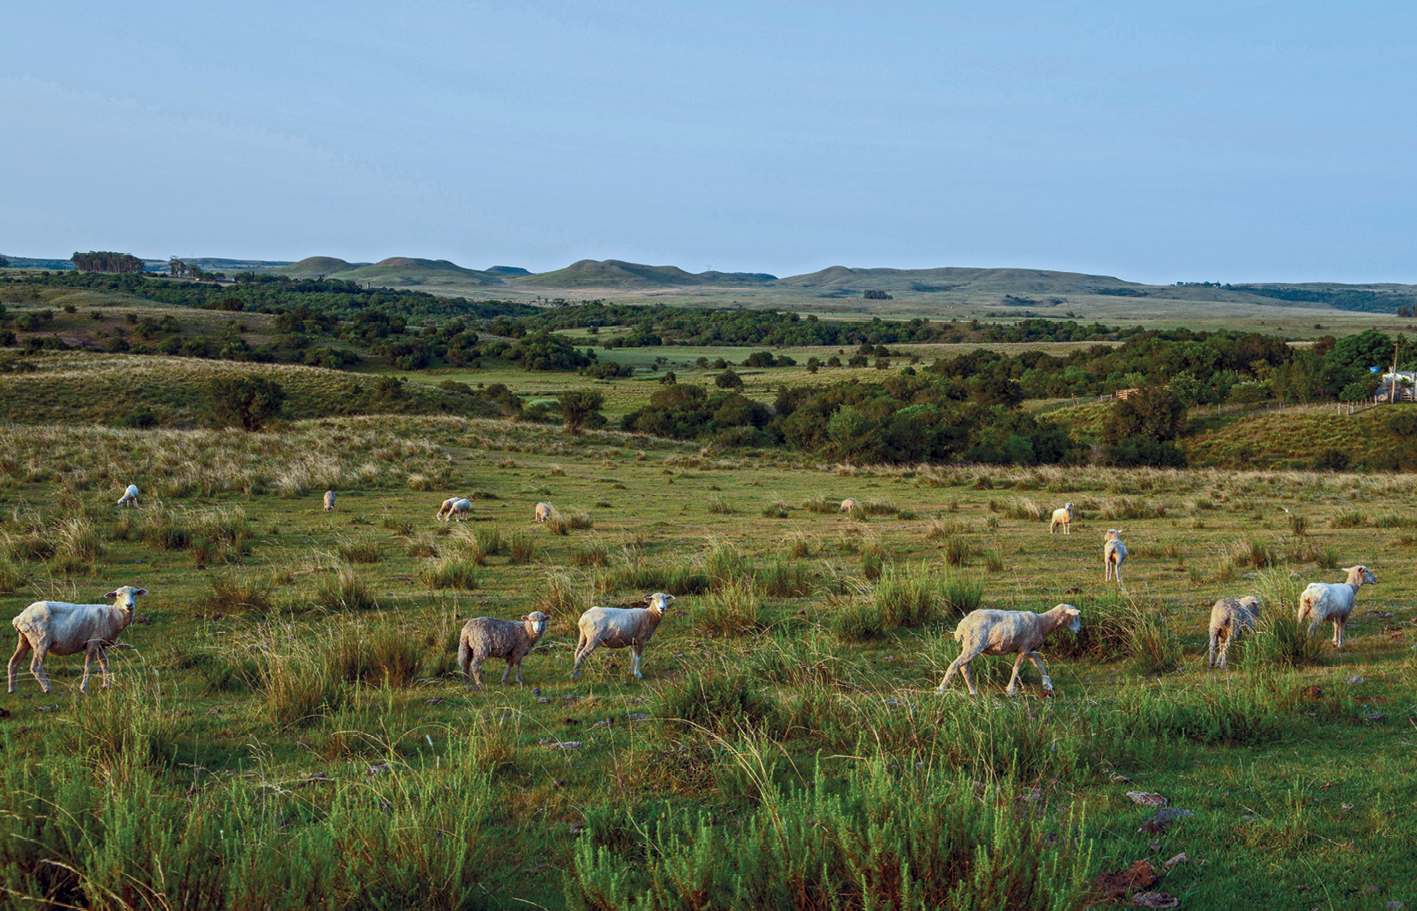 Fotografia. No primeiro plano, vista de uma área de pastagem com diversos espécimes de ovinos soltos. No segundo plano, vista de colinas amplas e suaves com muitas árvores.